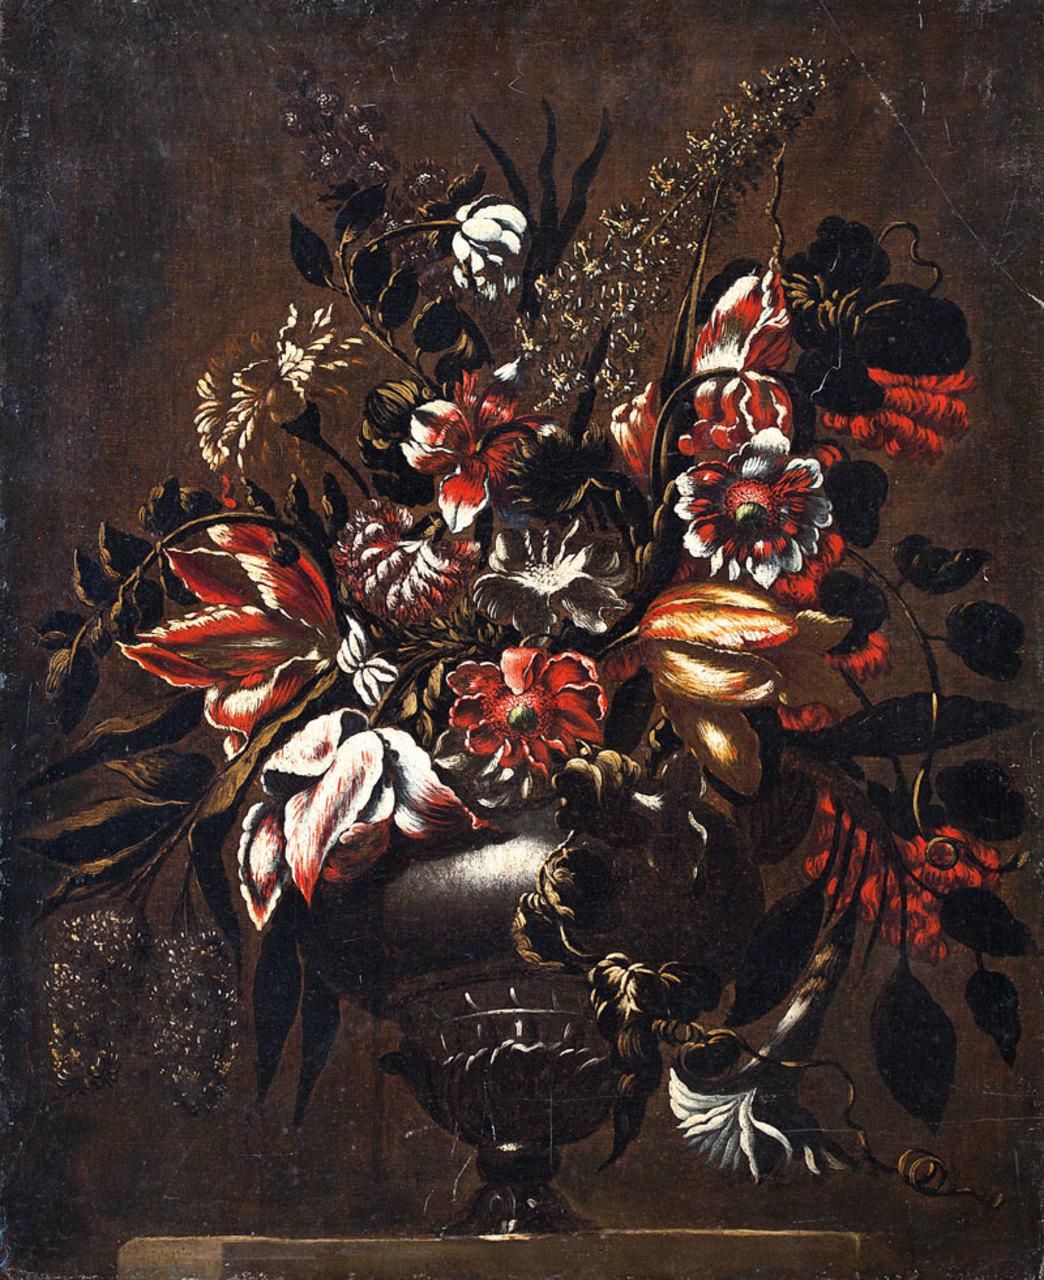 ESCUELA ESPAÑOLA, Fns. S. XVII Jarrón con flores
Óleo sobre lienzo
75 x 62 cm.